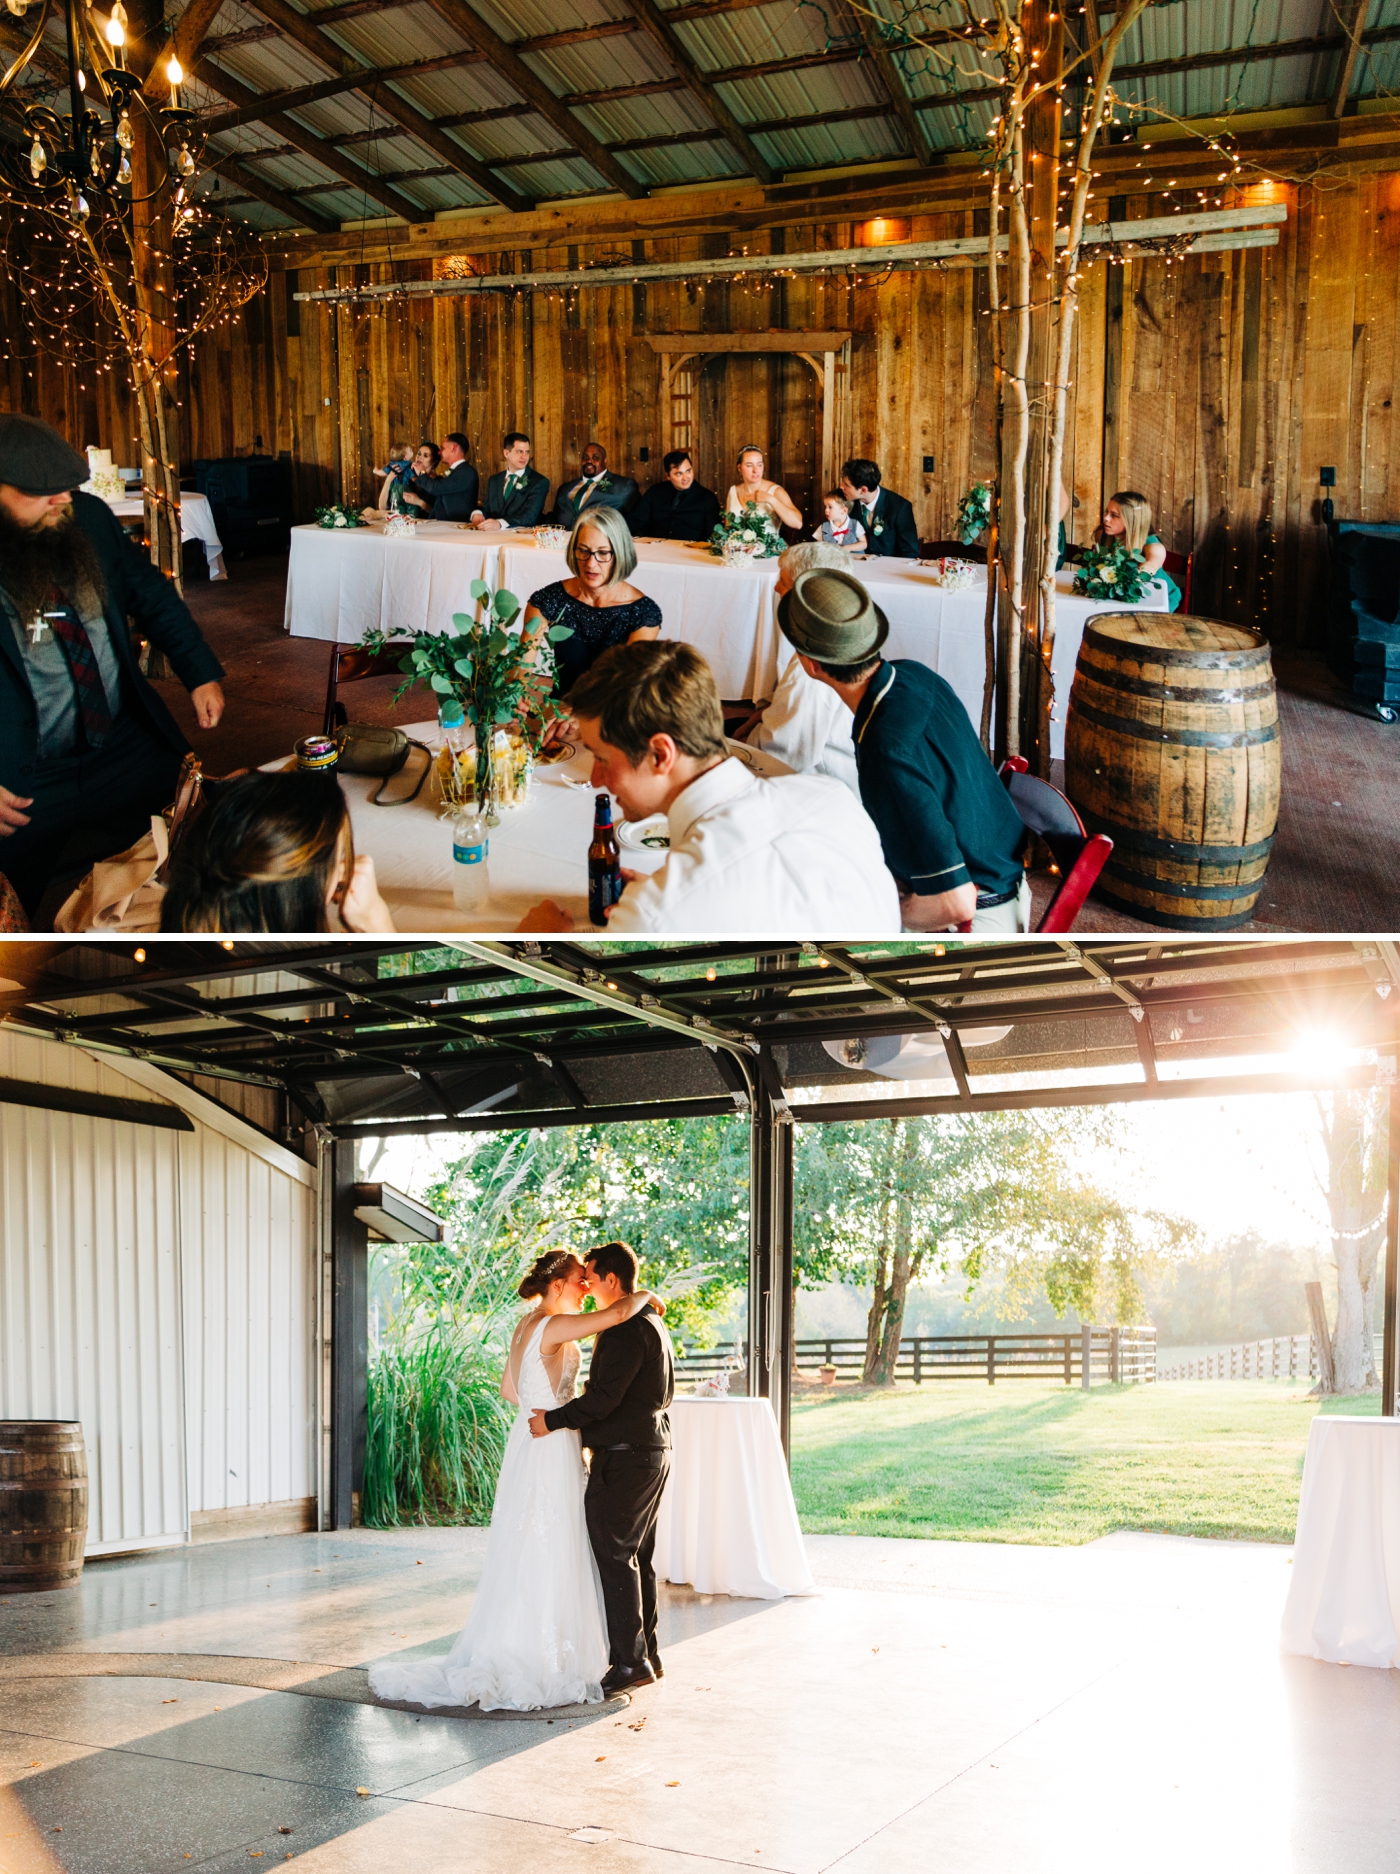 Wedding venue spaces at Sycamore Farm in Bloomington